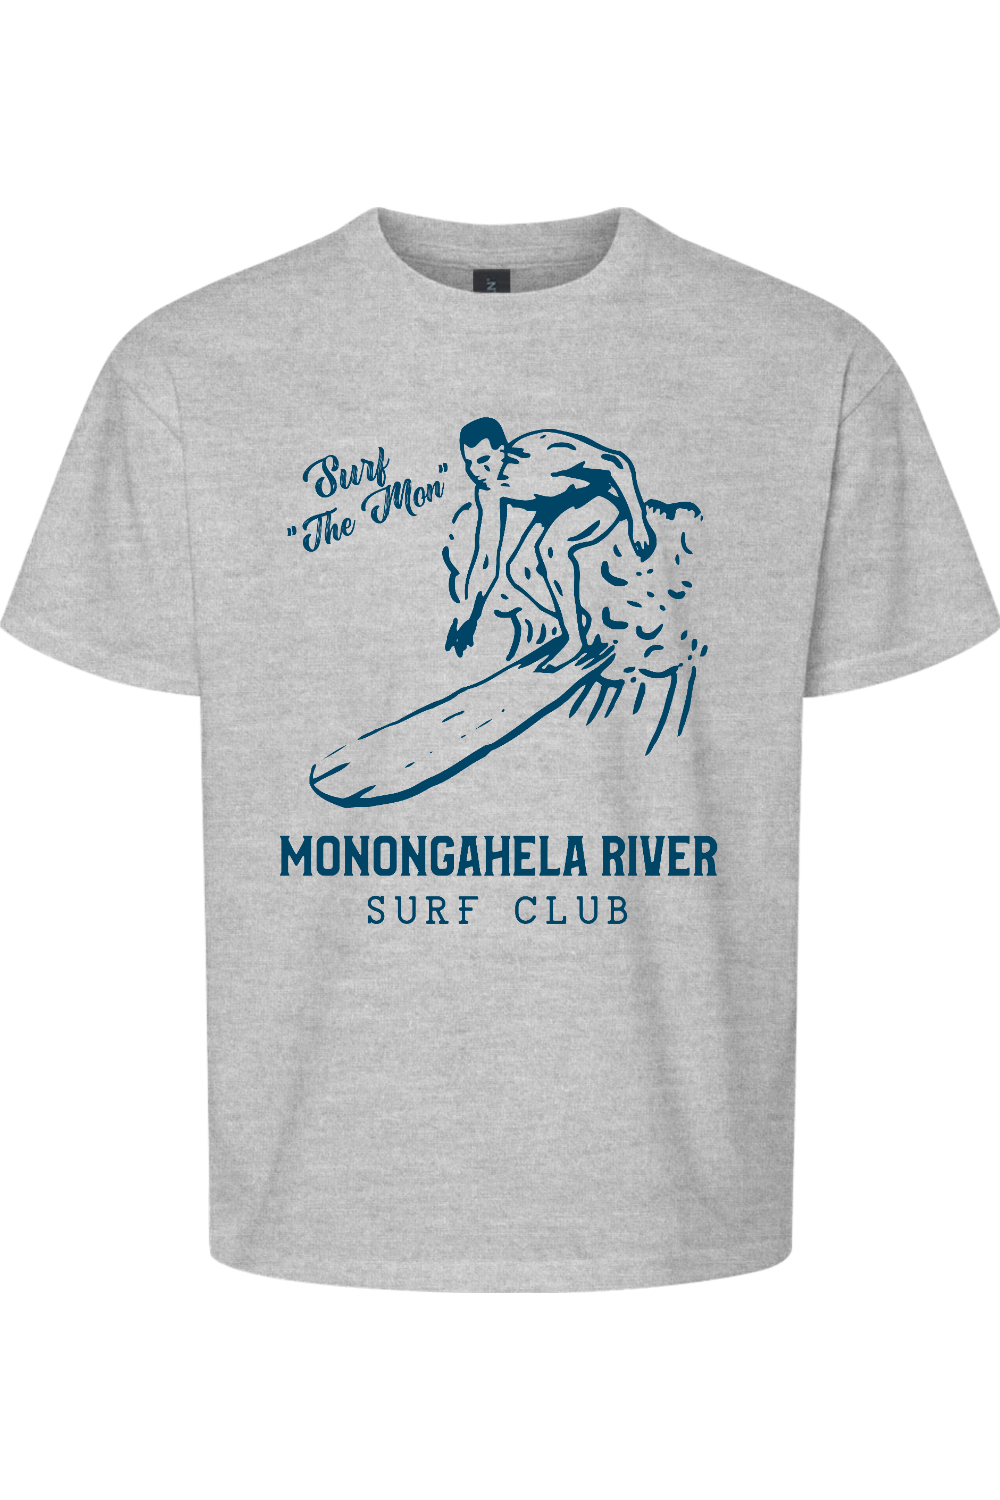 Monongahela River Surf Club - Kids - Yinzylvania